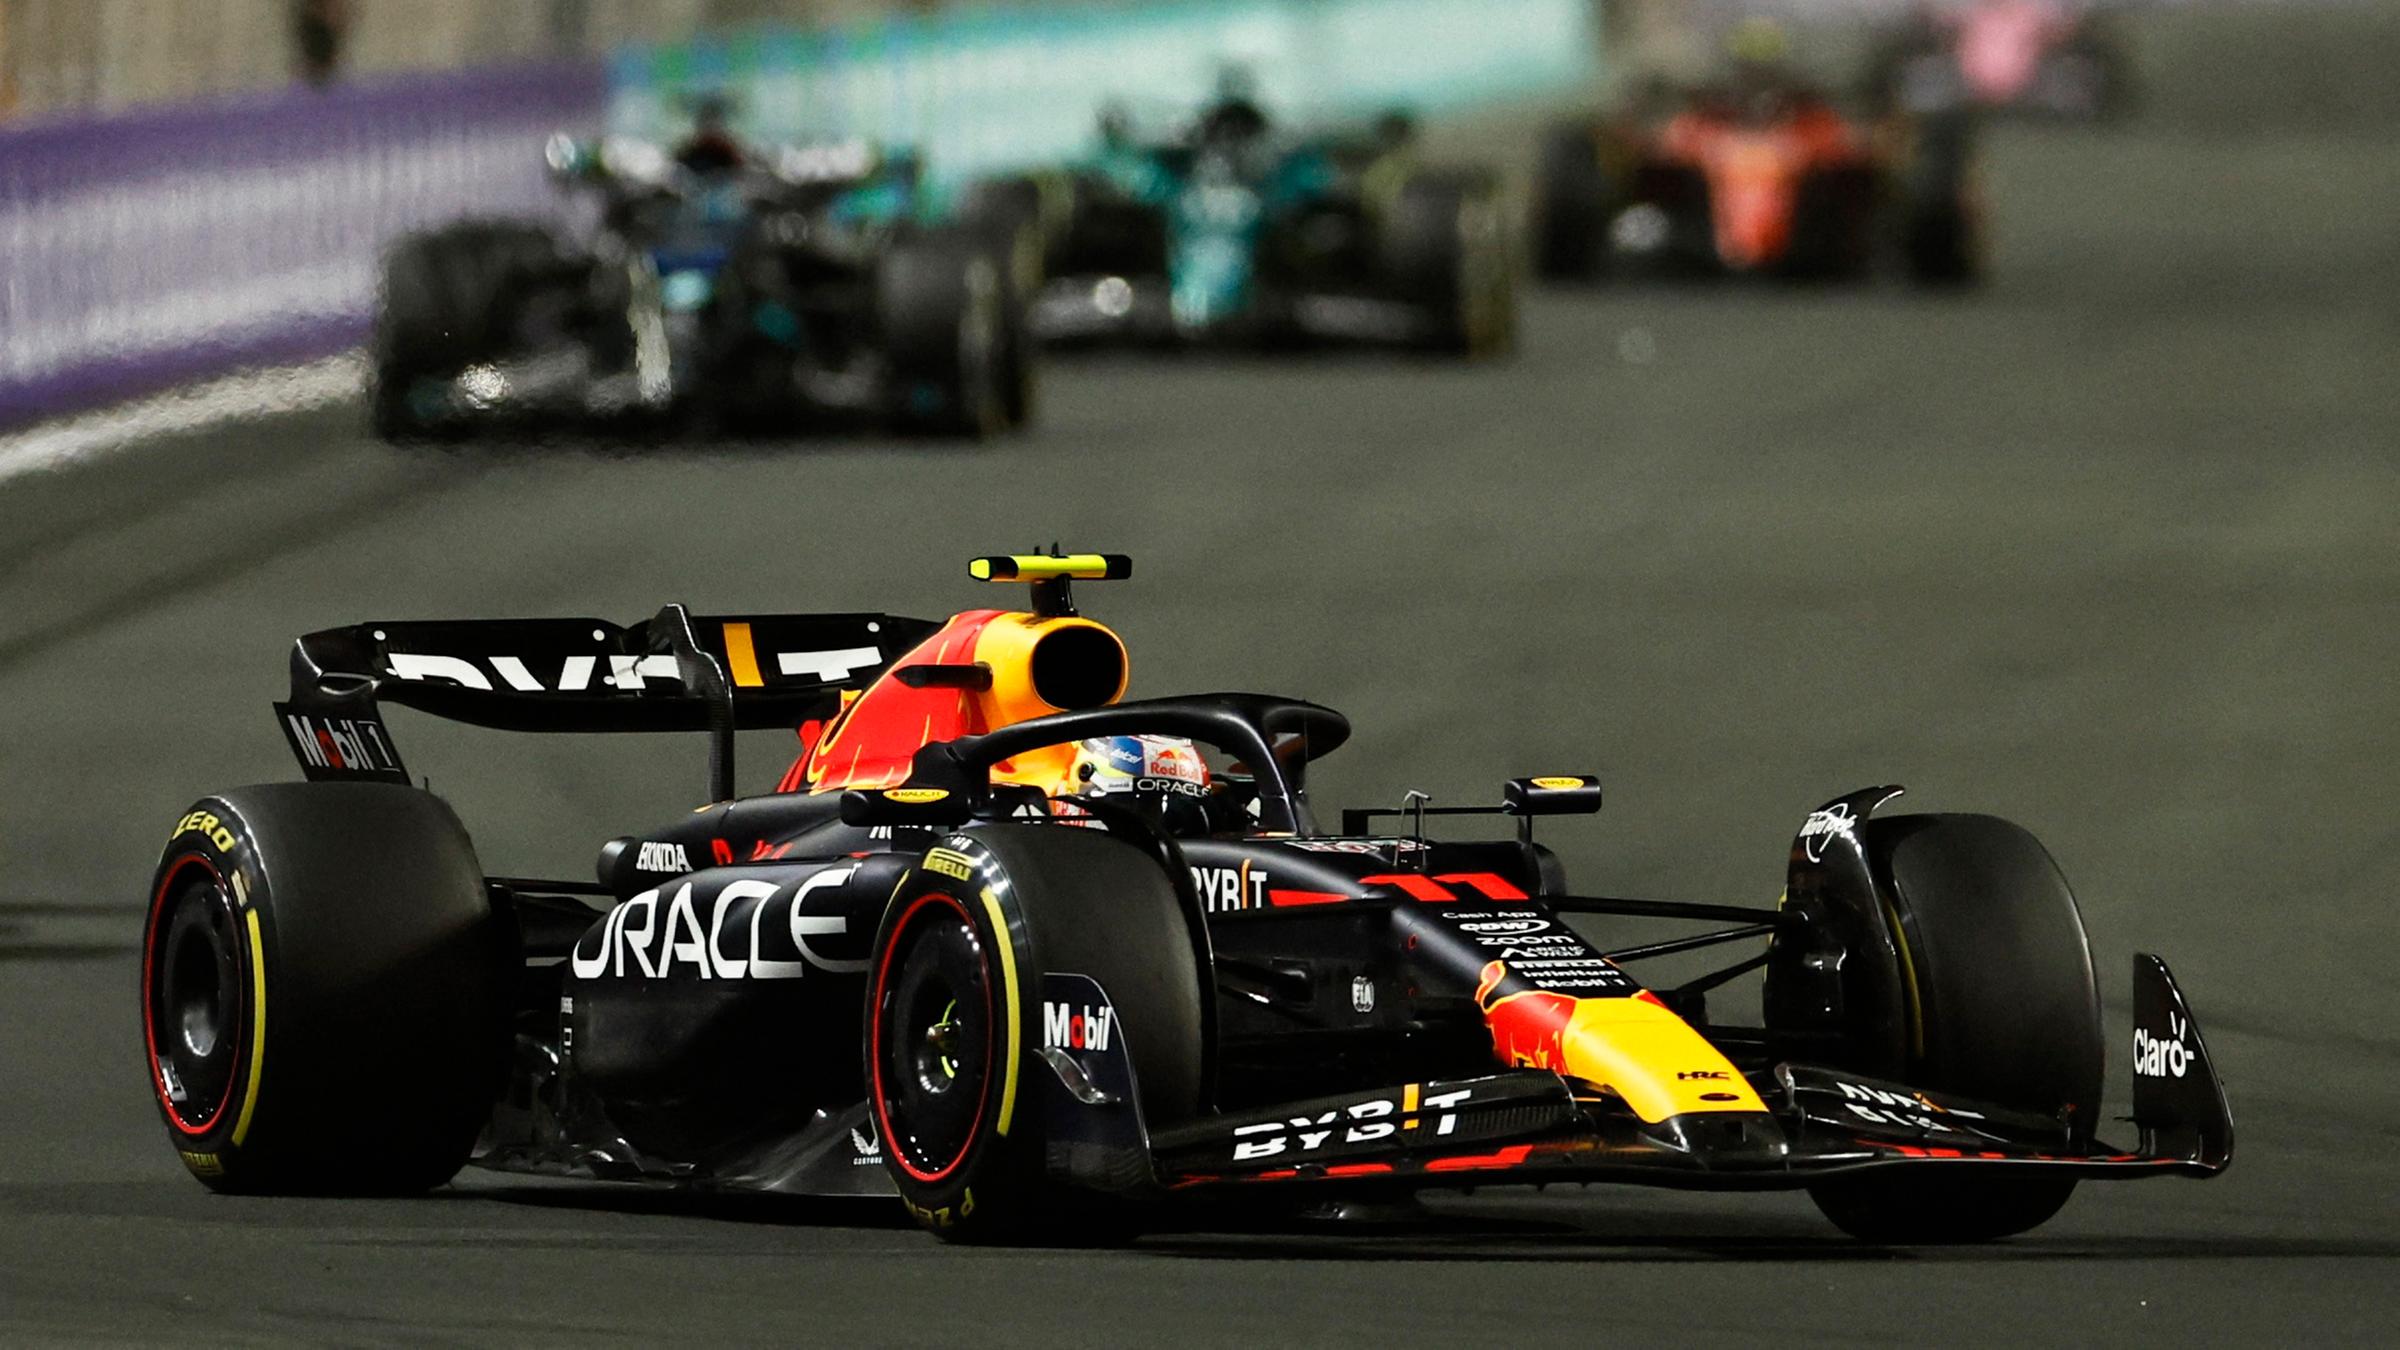 Formel 1 F1 - Grand Prix von Saudi-Arabien - Jeddah Corniche Circuit, Jeddah, Saudi-Arabien - 19.03.2023 Sergio Perez von Red Bull in Aktion während des Rennens